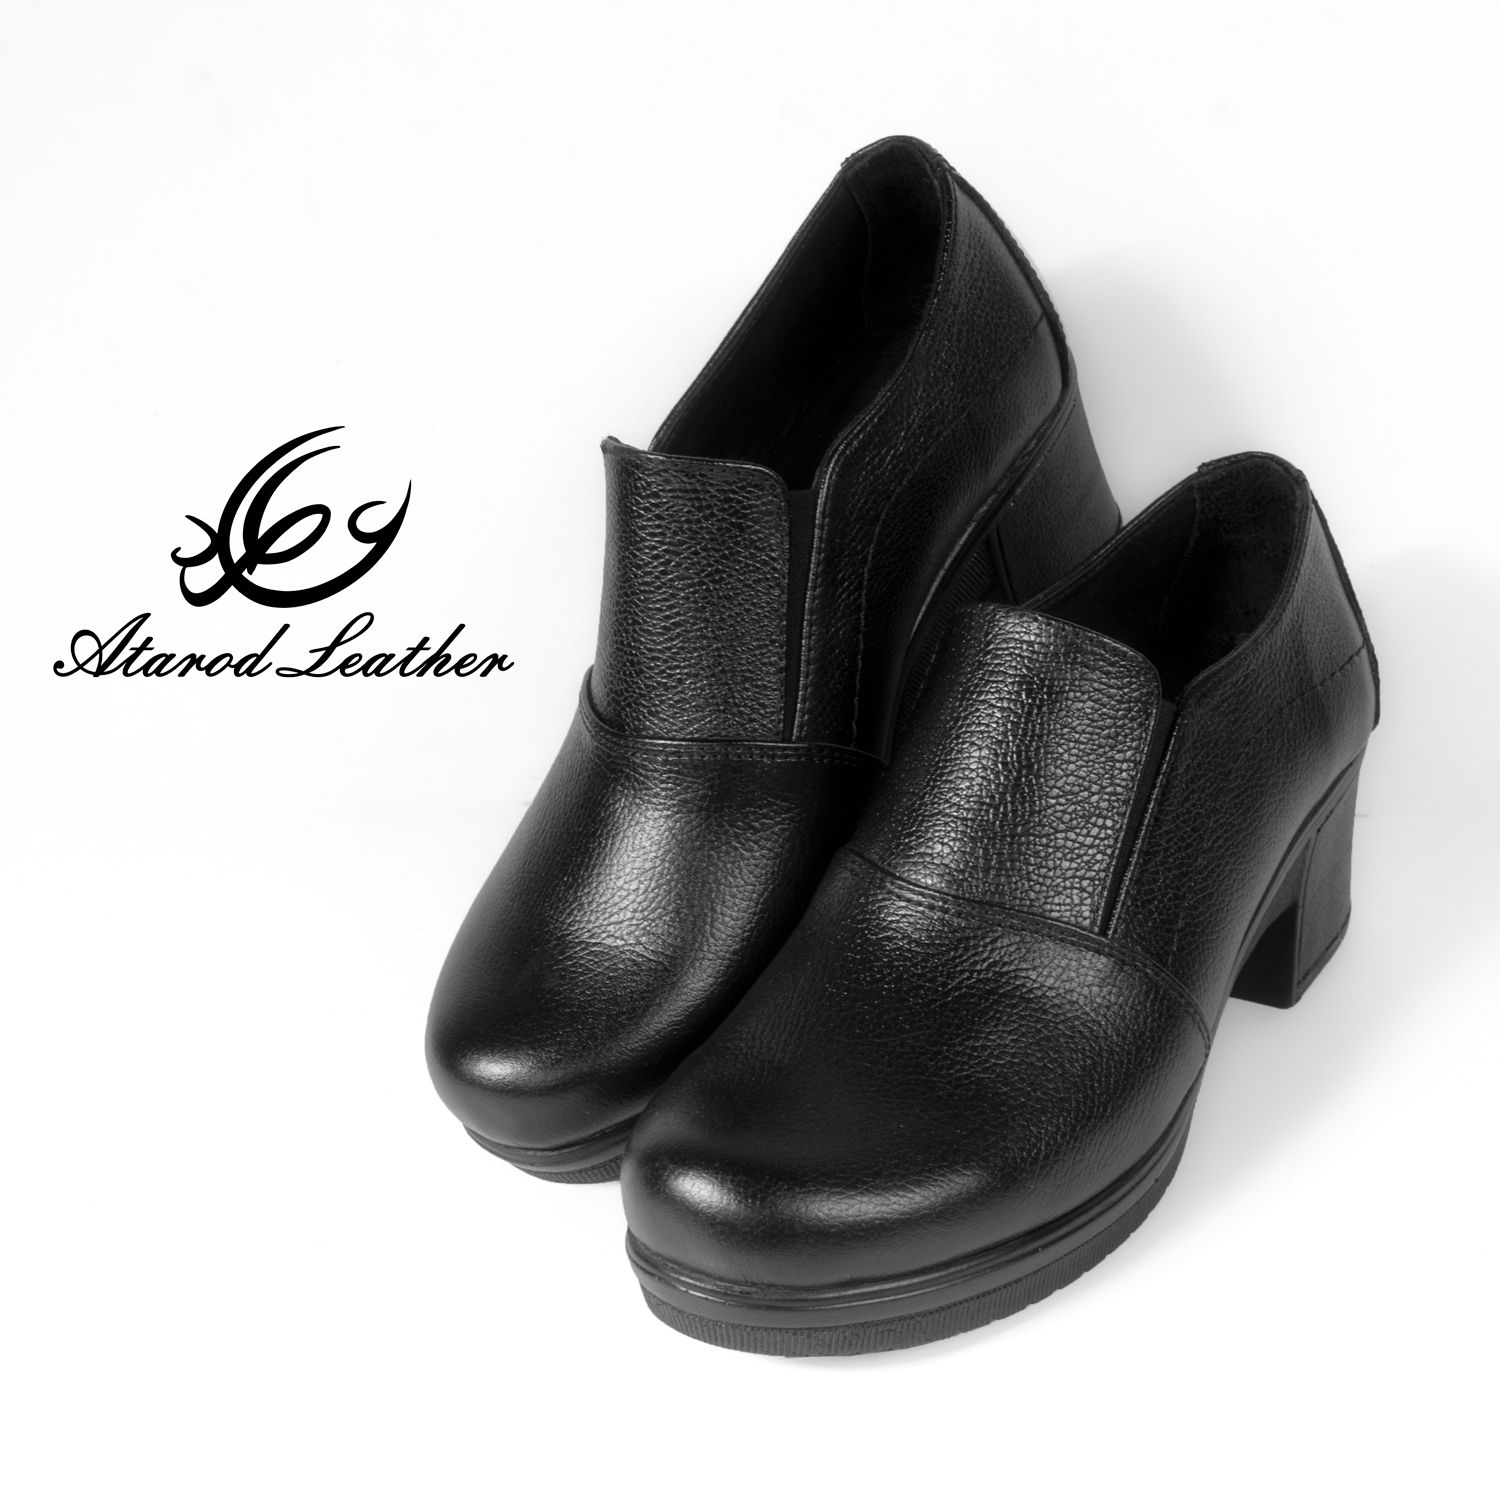 کفش زنانه چرم عطارد مدل چرم طبیعی کد SH99 -  - 6